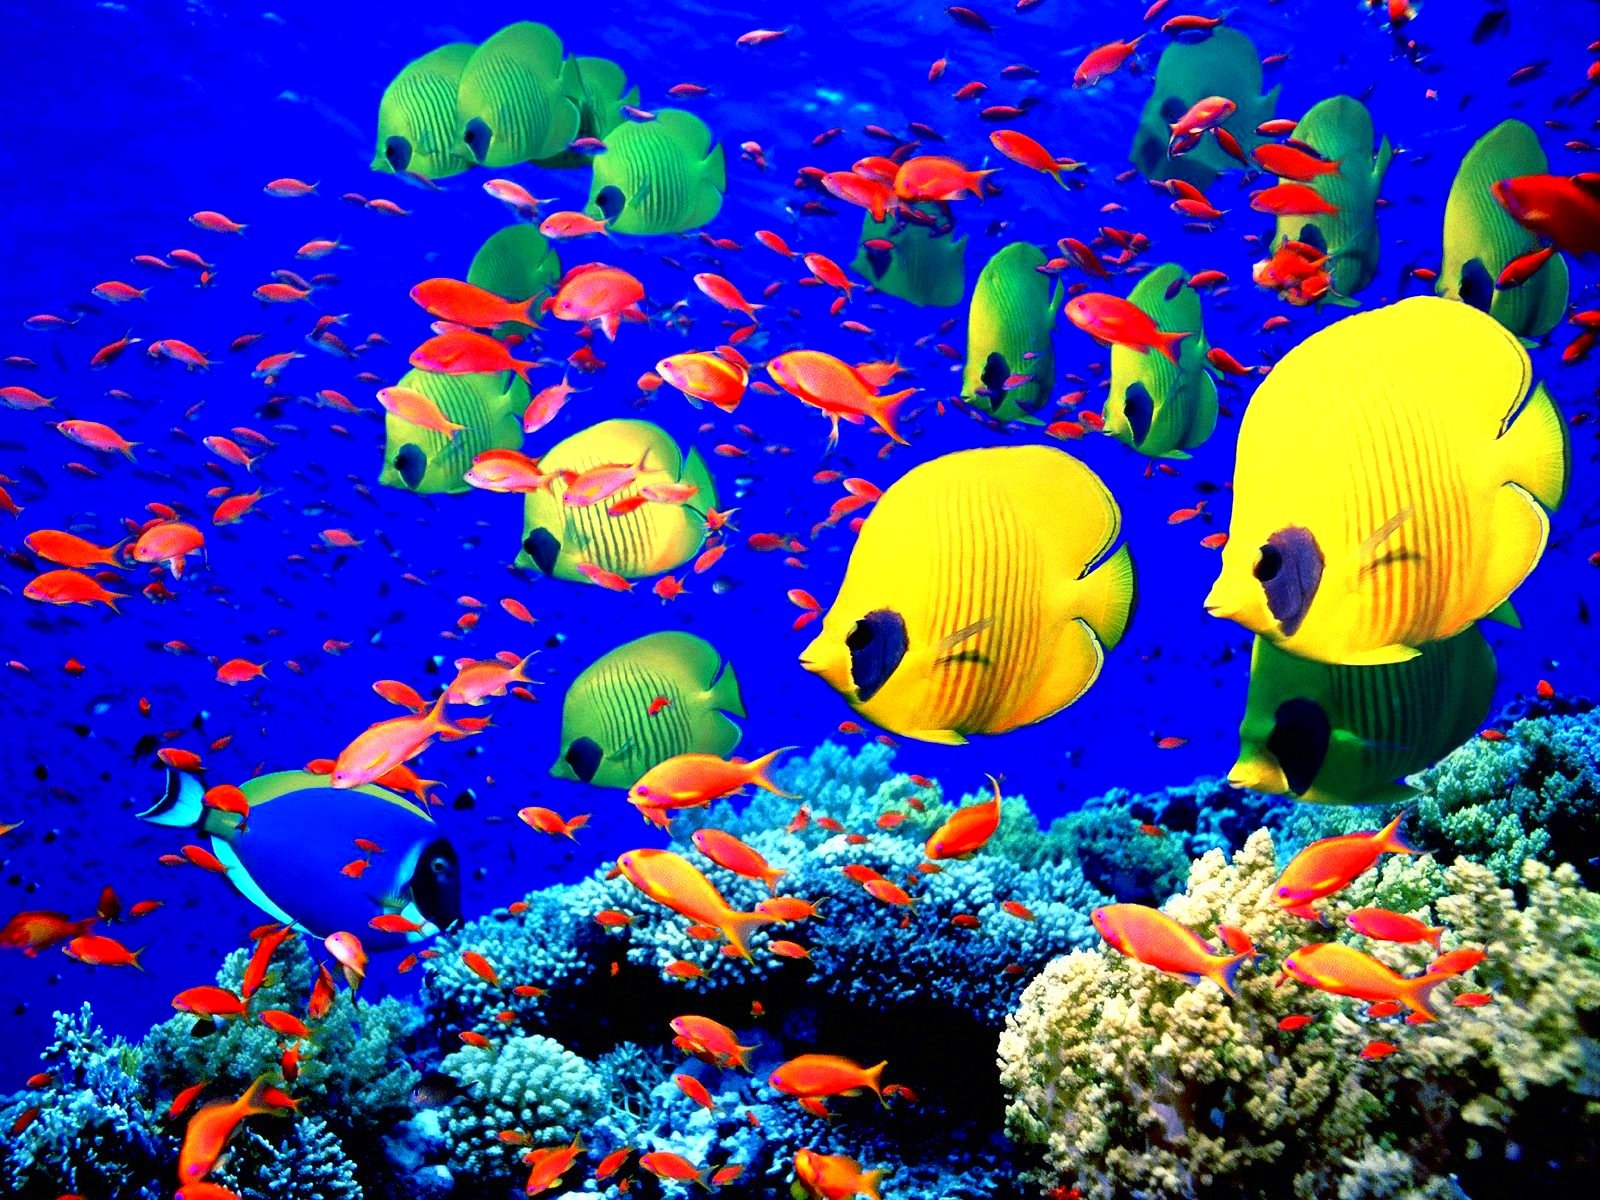 fish, Fishes, Underwater, Ocean, Sea, Sealife, Nature Wallpaper